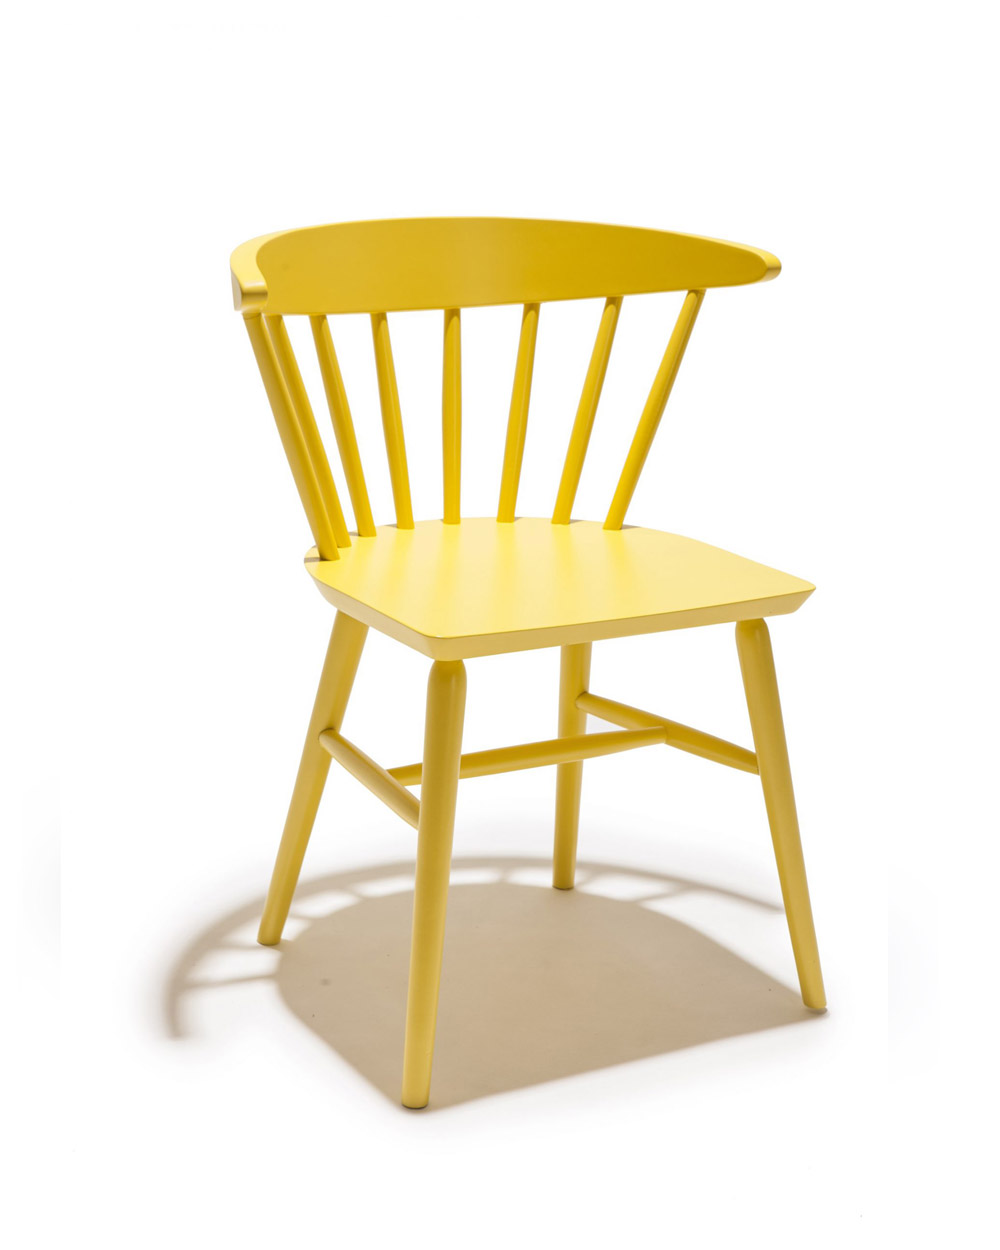 Moabi 5558 Chair